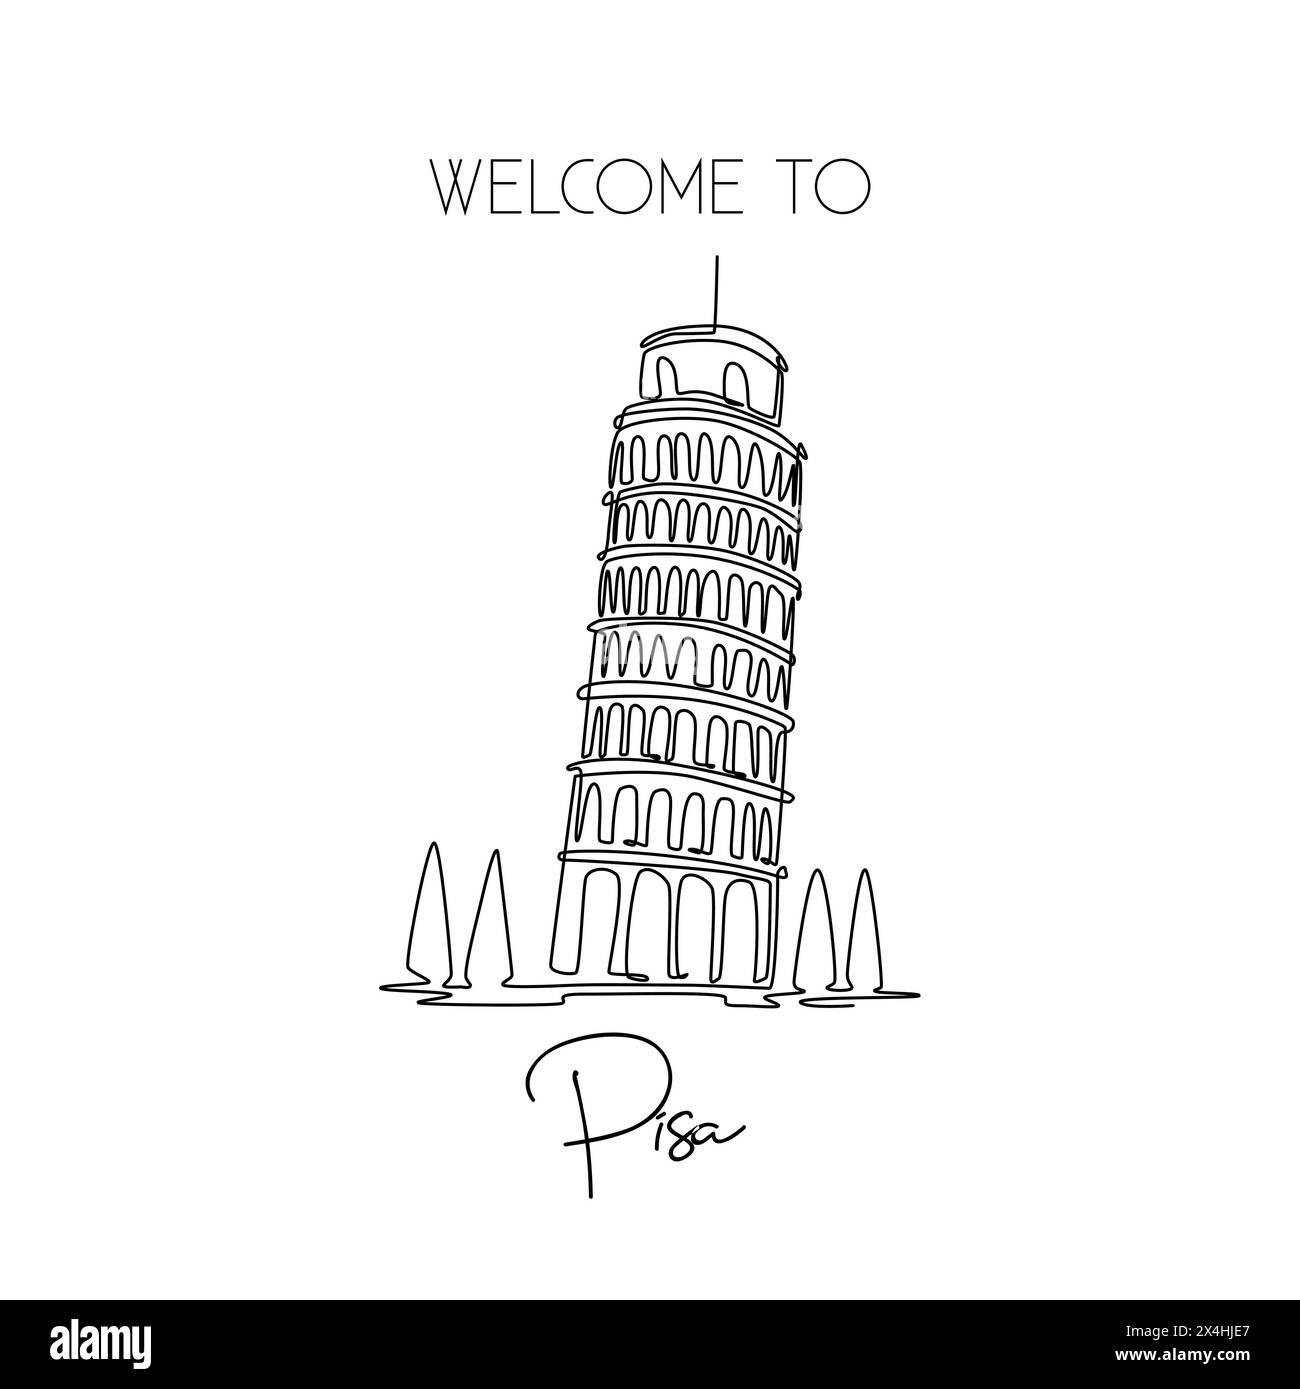 Eine einzeilige Zeichnung des schlanken Pisa-Turms. Wunderschöner historischer, ikonischer Ort auf der Piazza del Duomo. Postkarte und Poster im Wohnstil. Modus Stock Vektor